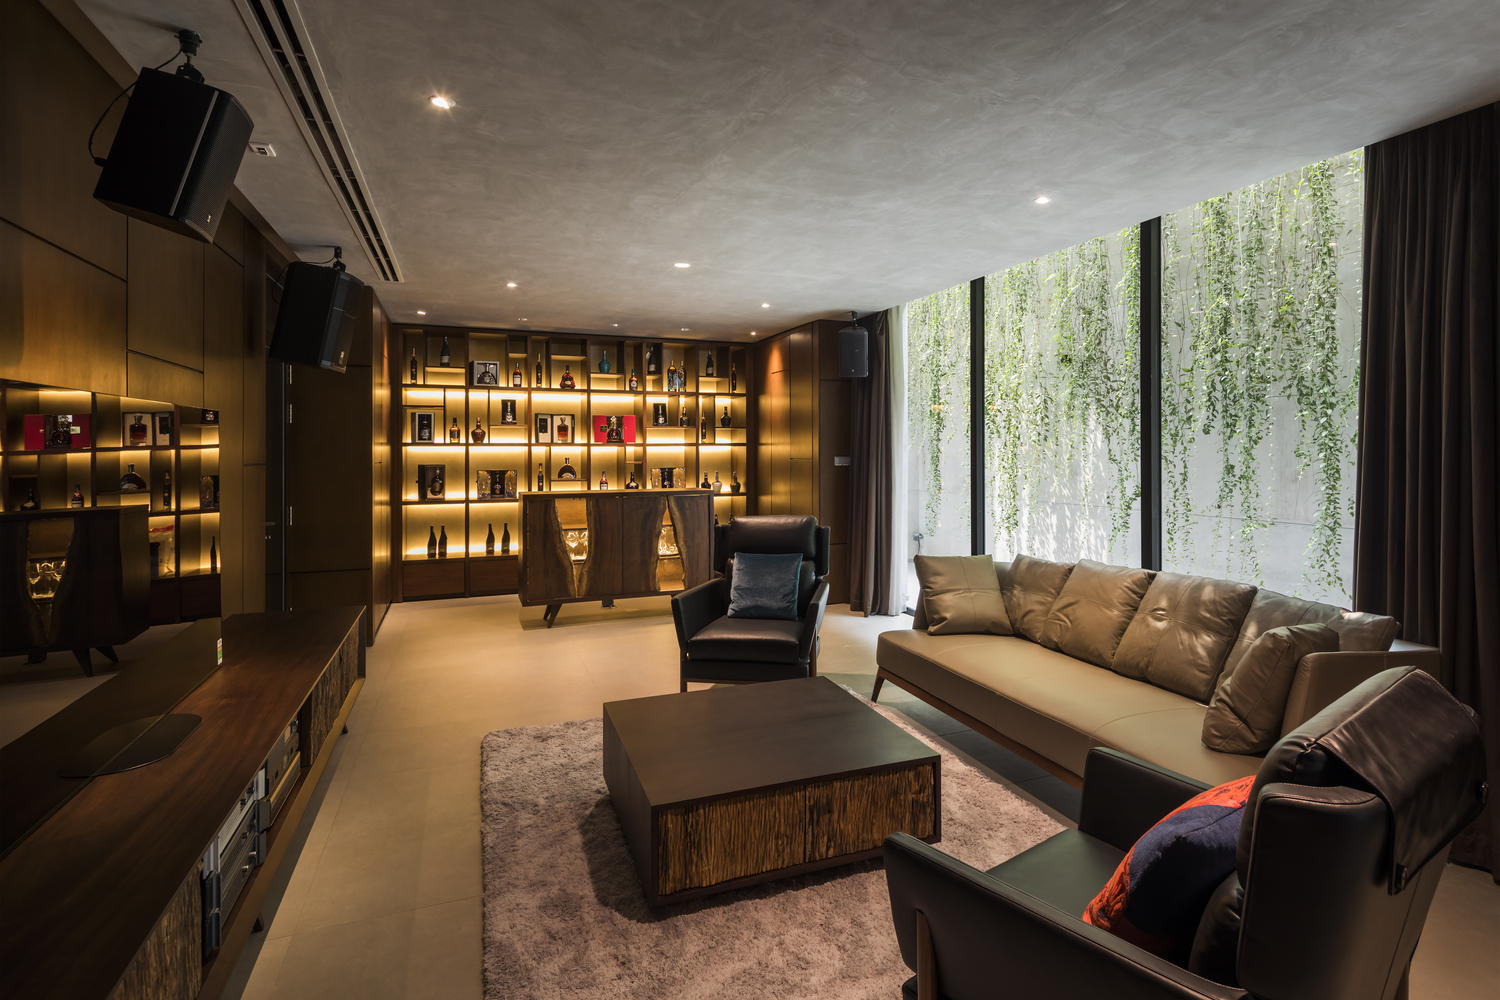 hình ảnh phòng sinh hoạt chung trên tầng lầu sang trọng với sofa bọc da màu xám, bàn trà gỗ vuông đặt trên thảm lông, cạnh đó là hệ tủ rượu ấn tượng với đèn LED vàng trang trí